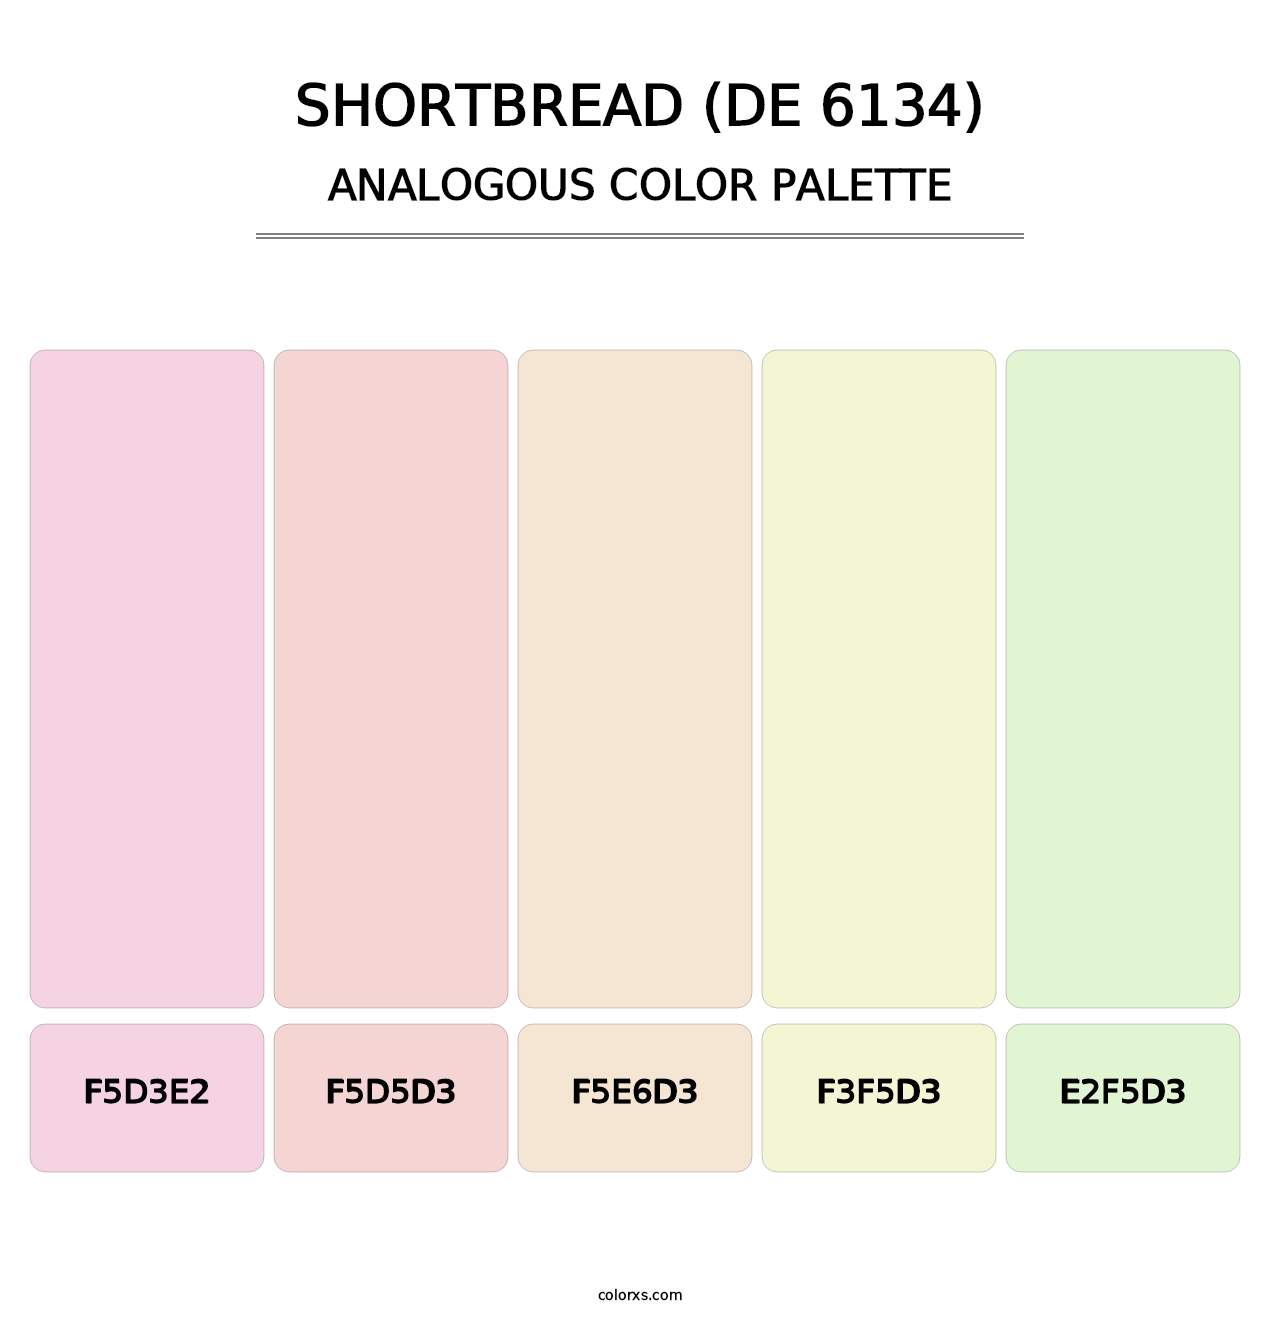 Shortbread (DE 6134) - Analogous Color Palette